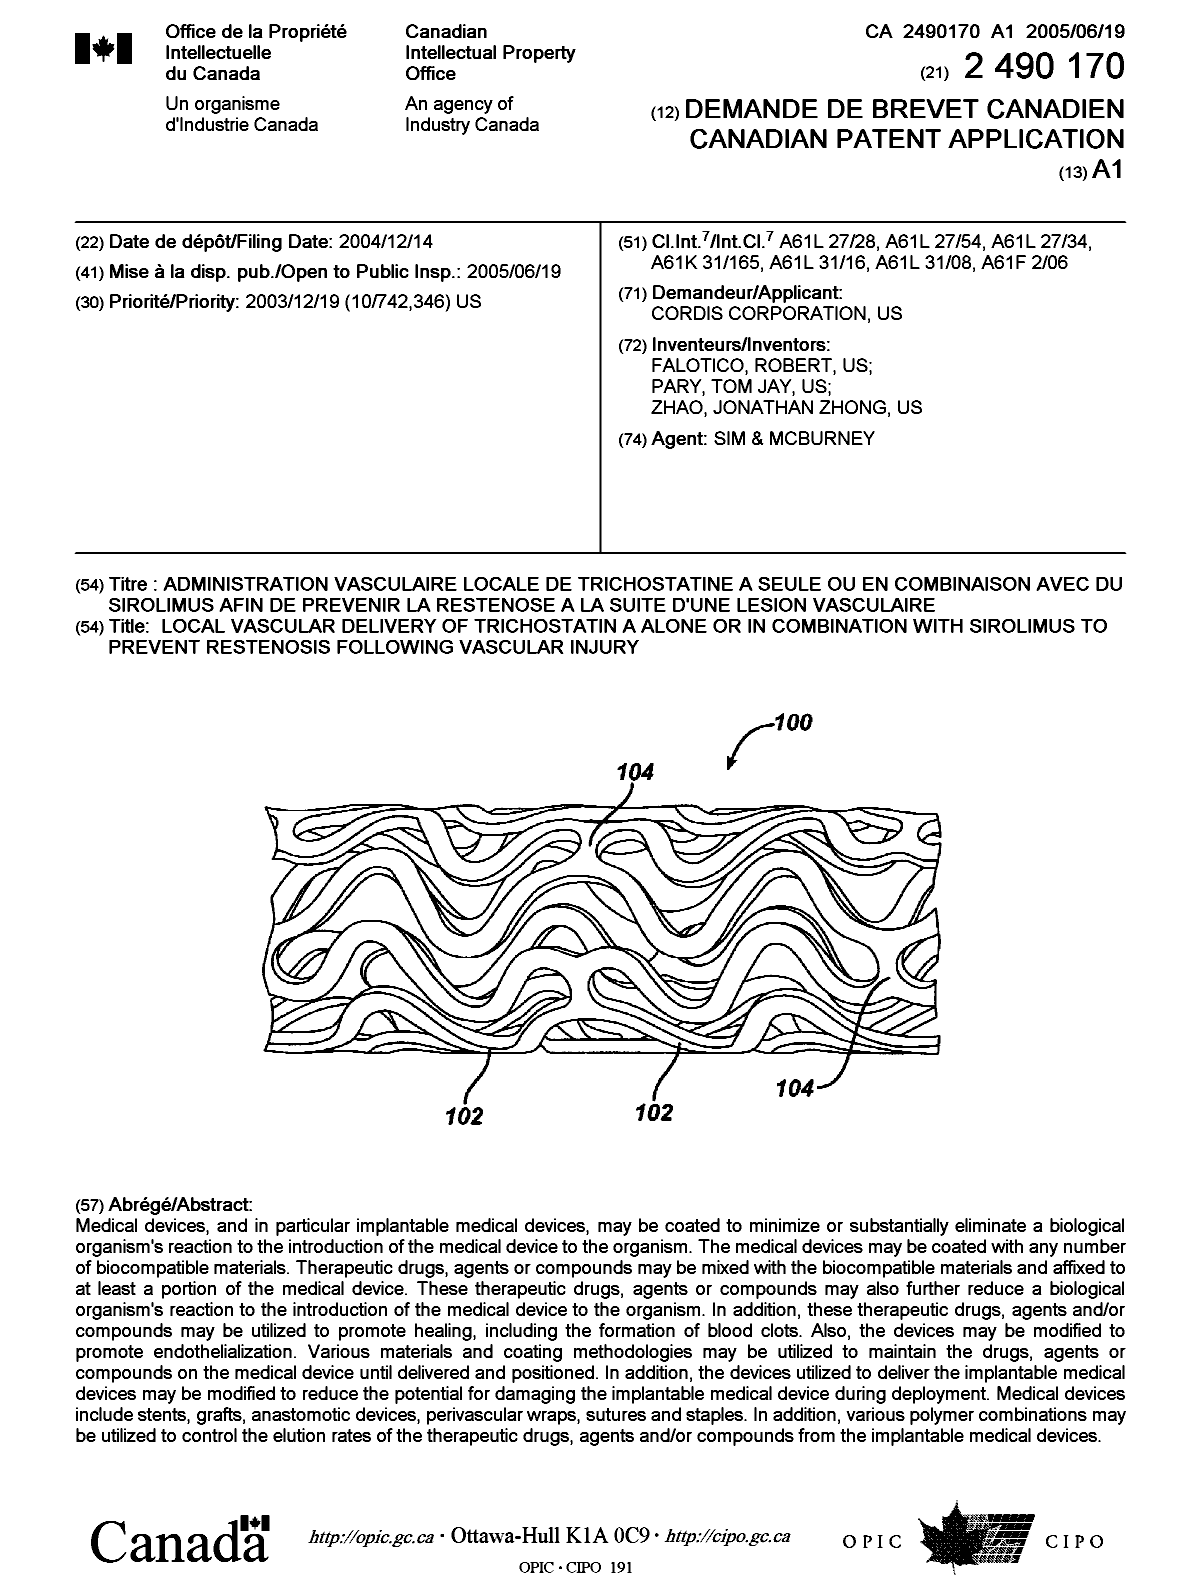 Document de brevet canadien 2490170. Page couverture 20041206. Image 1 de 1